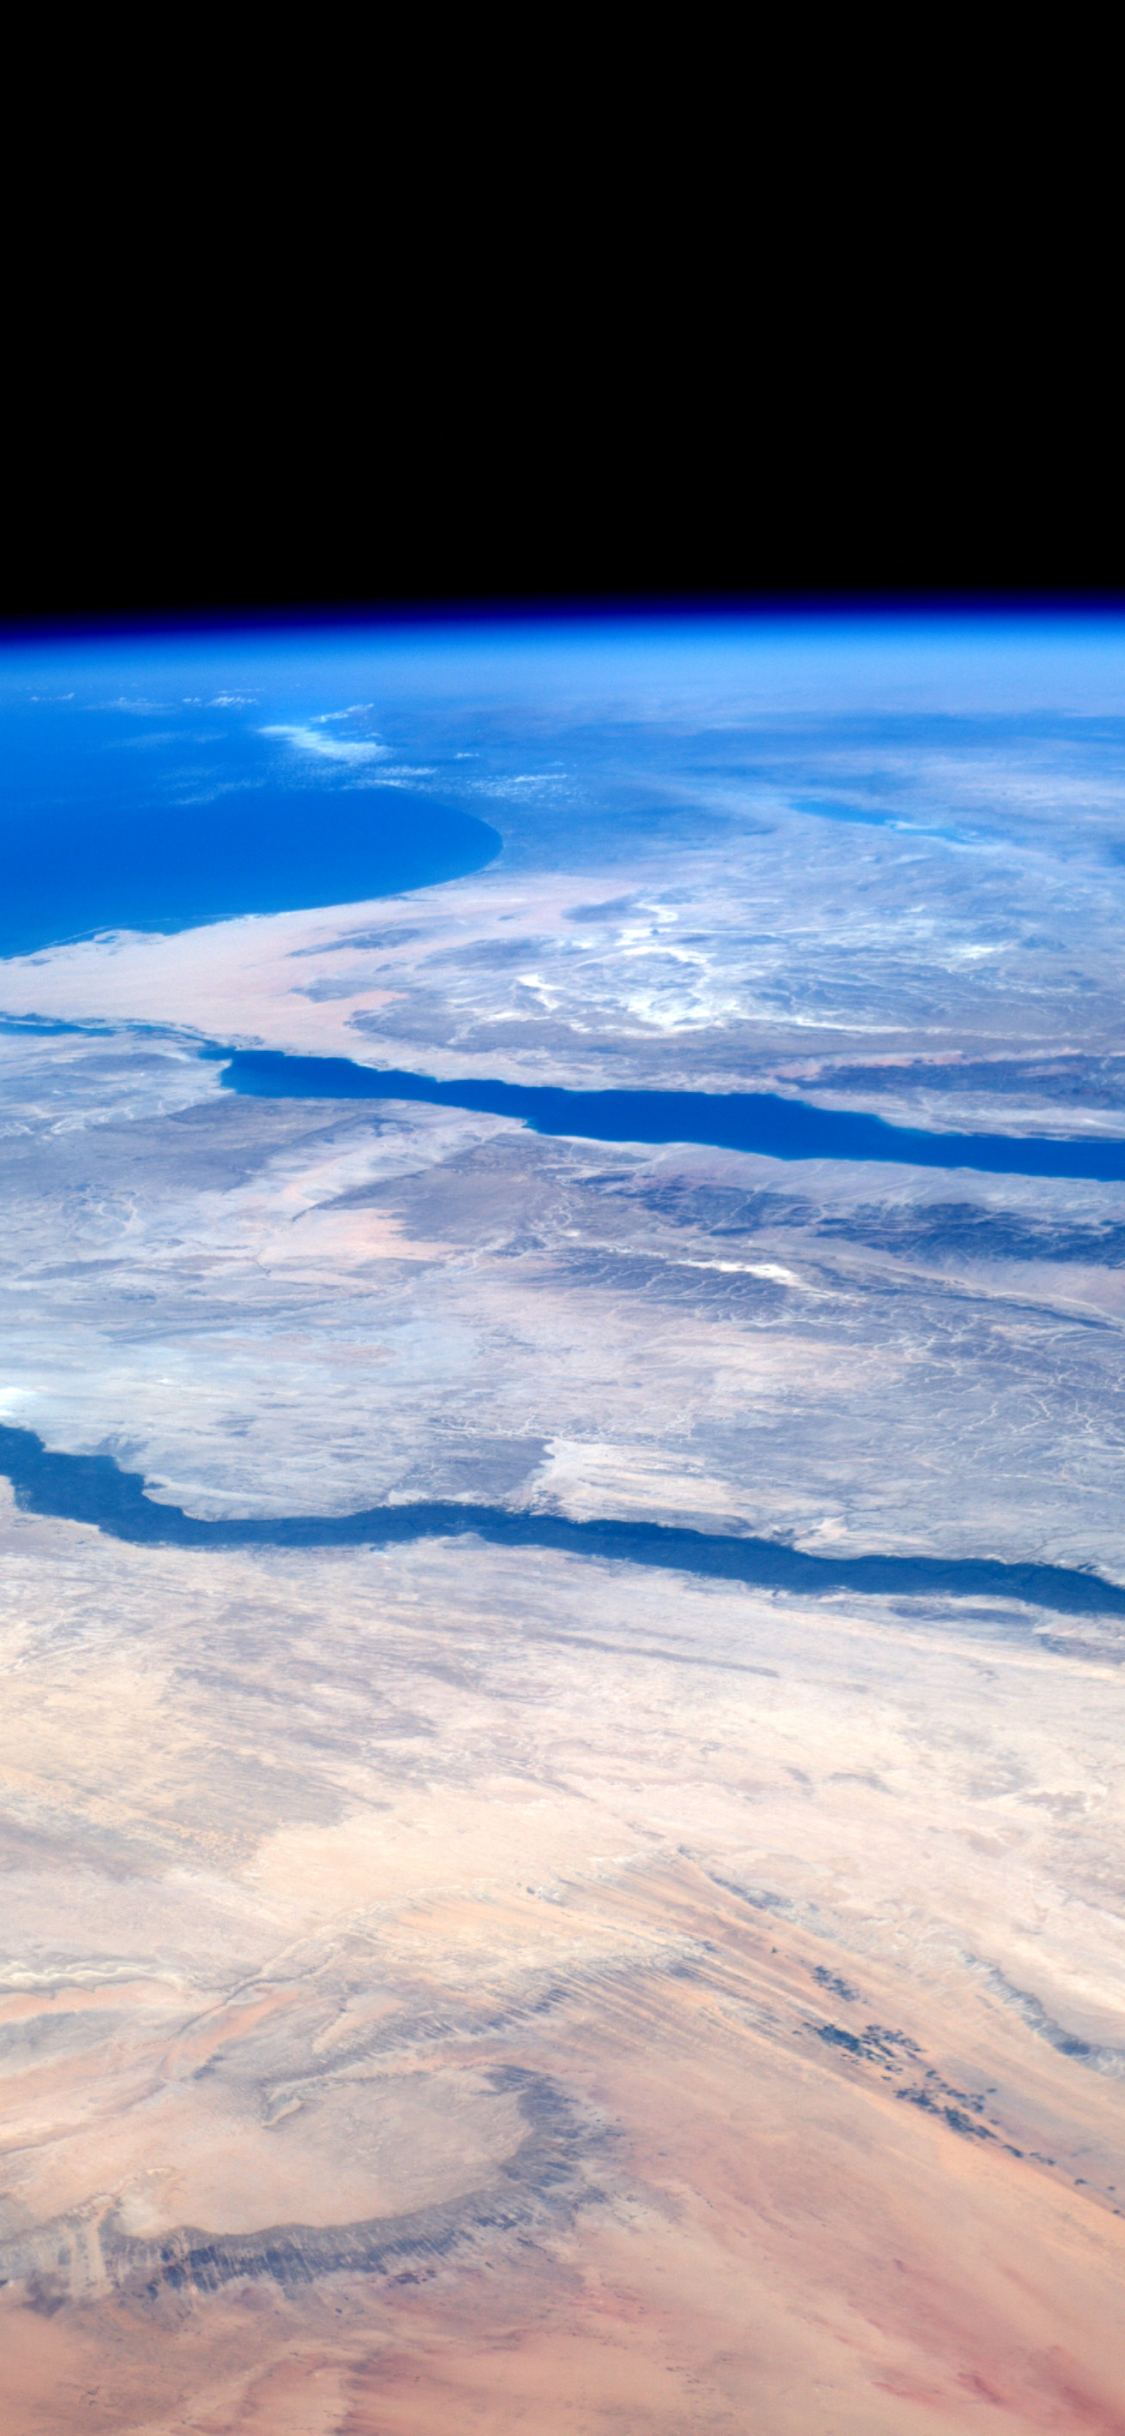 Скачать обои Синайский Полуостров на телефон бесплатно